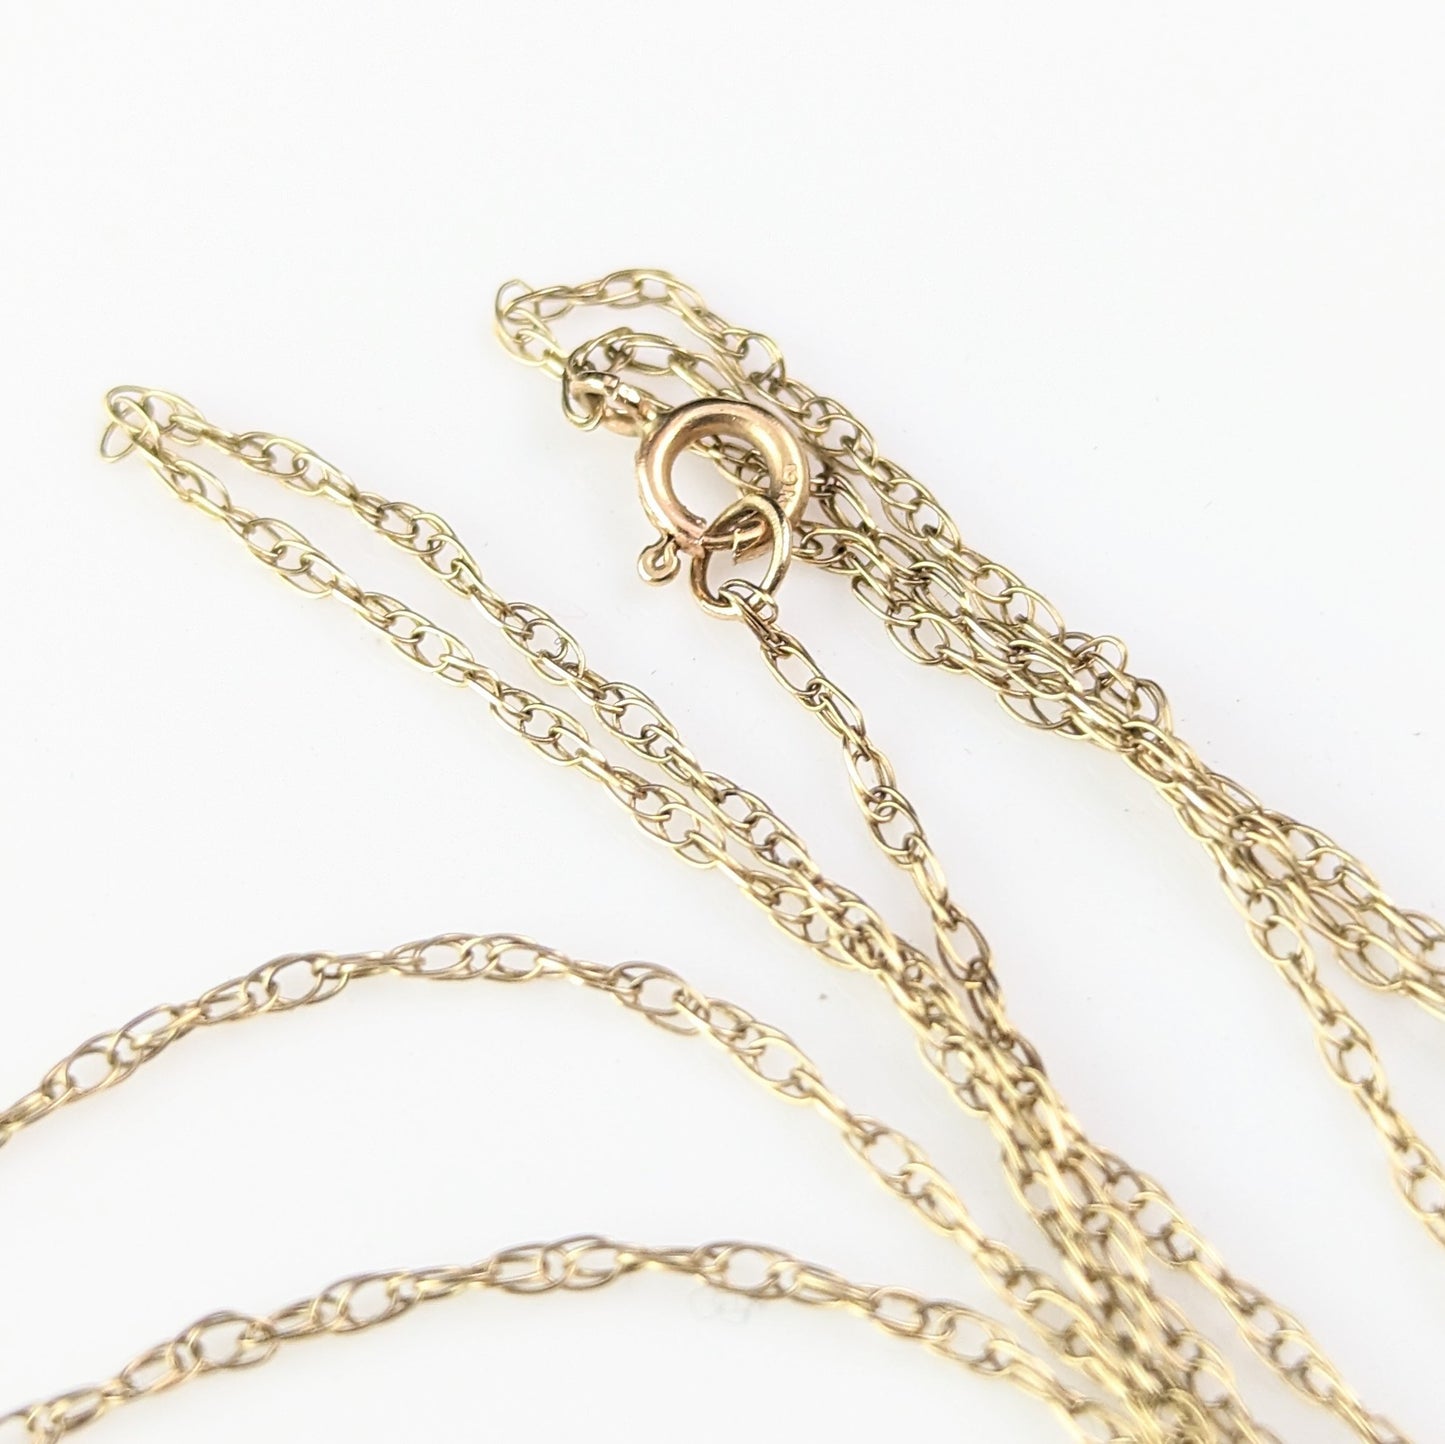 Antique Art Deco Moonstone pendant necklace, 9ct gold